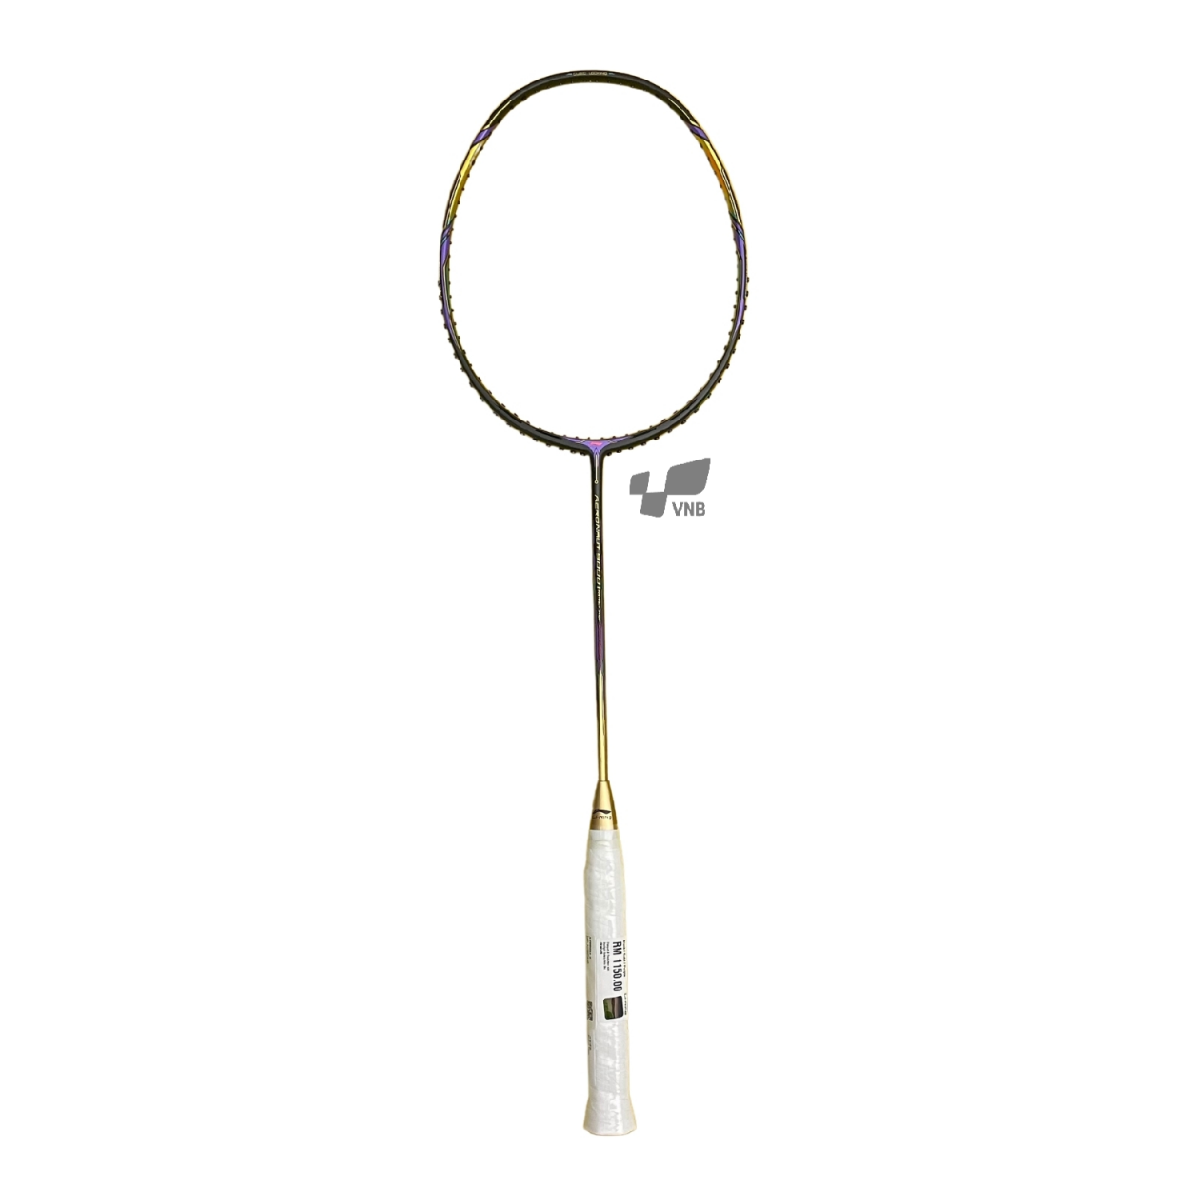 Những cây vợt cầu lông cao cấp được người chơi phong trào và chuyên nghiệp ưa chuộng nhất